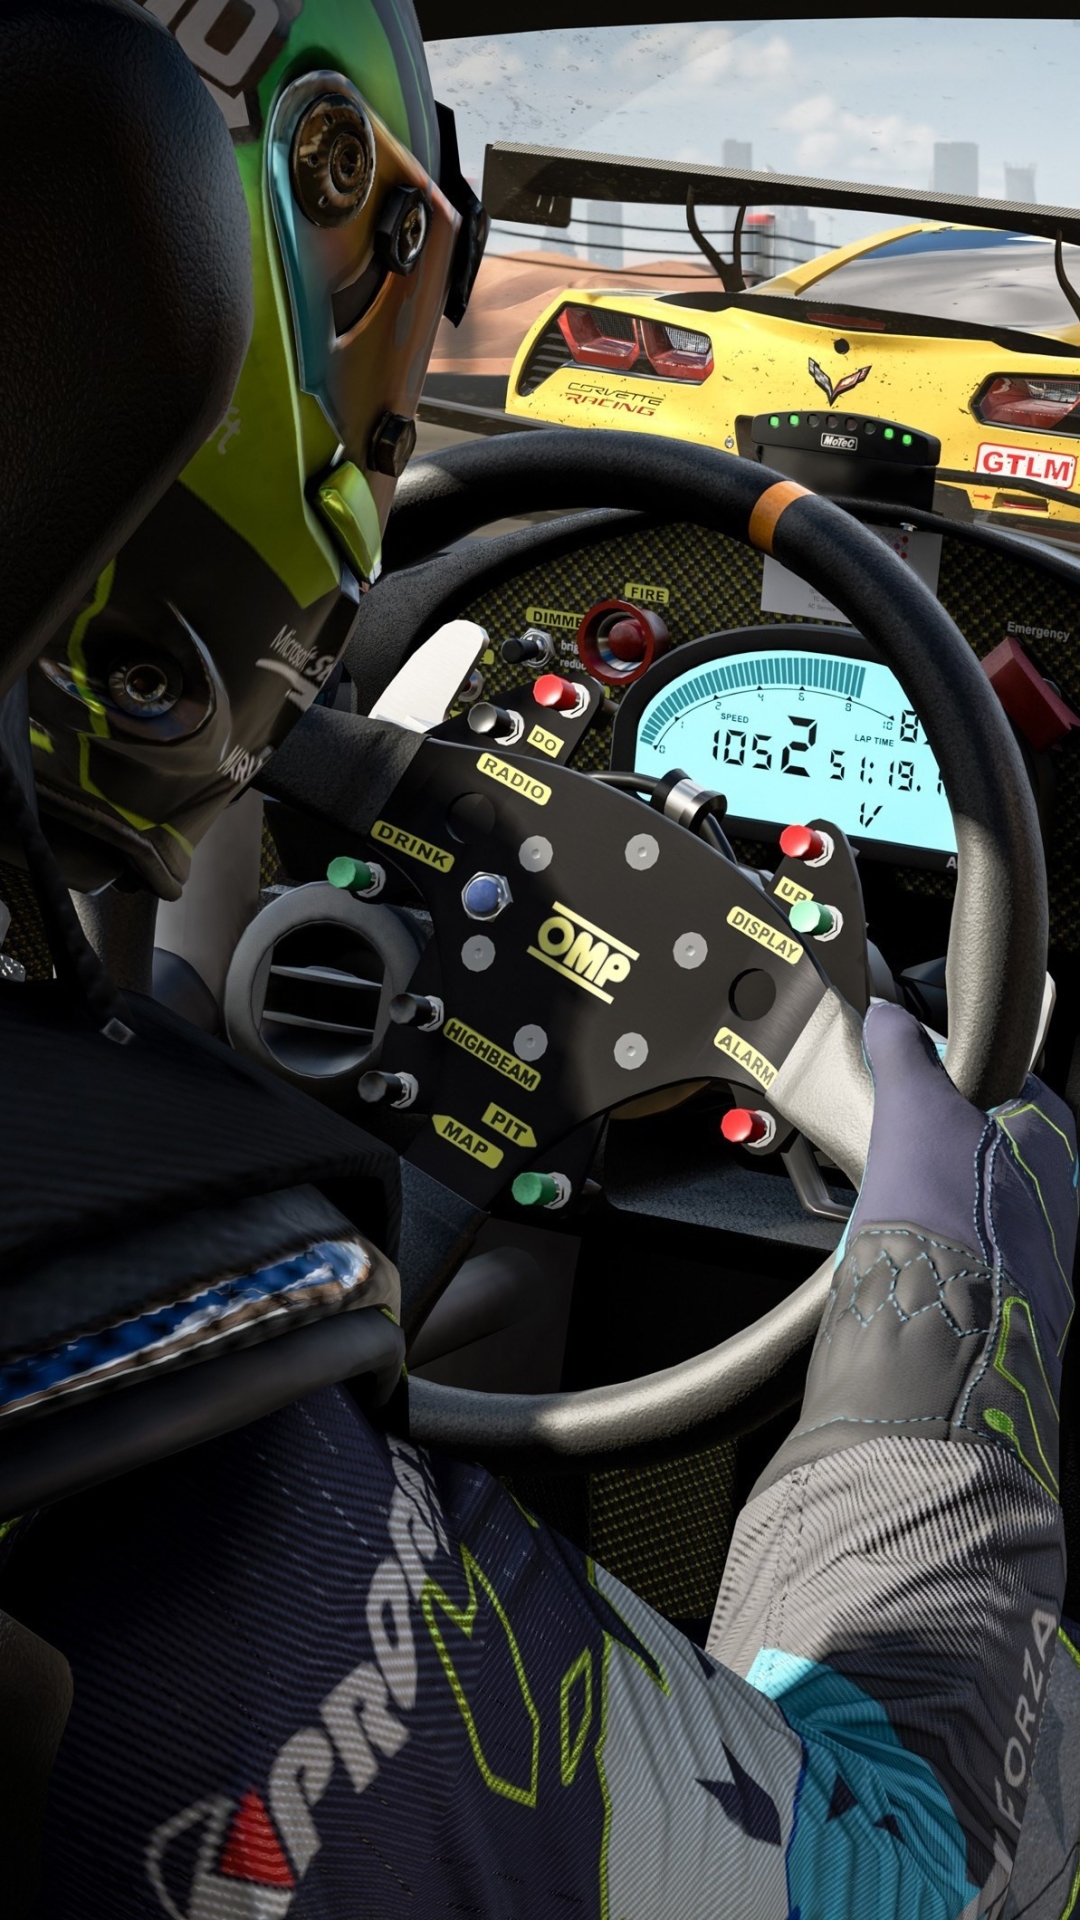 Descarga gratuita de fondo de pantalla para móvil de Fuerza, Coche De Carreras, Videojuego, Forza Motorsport, Forza Motorsport 7.